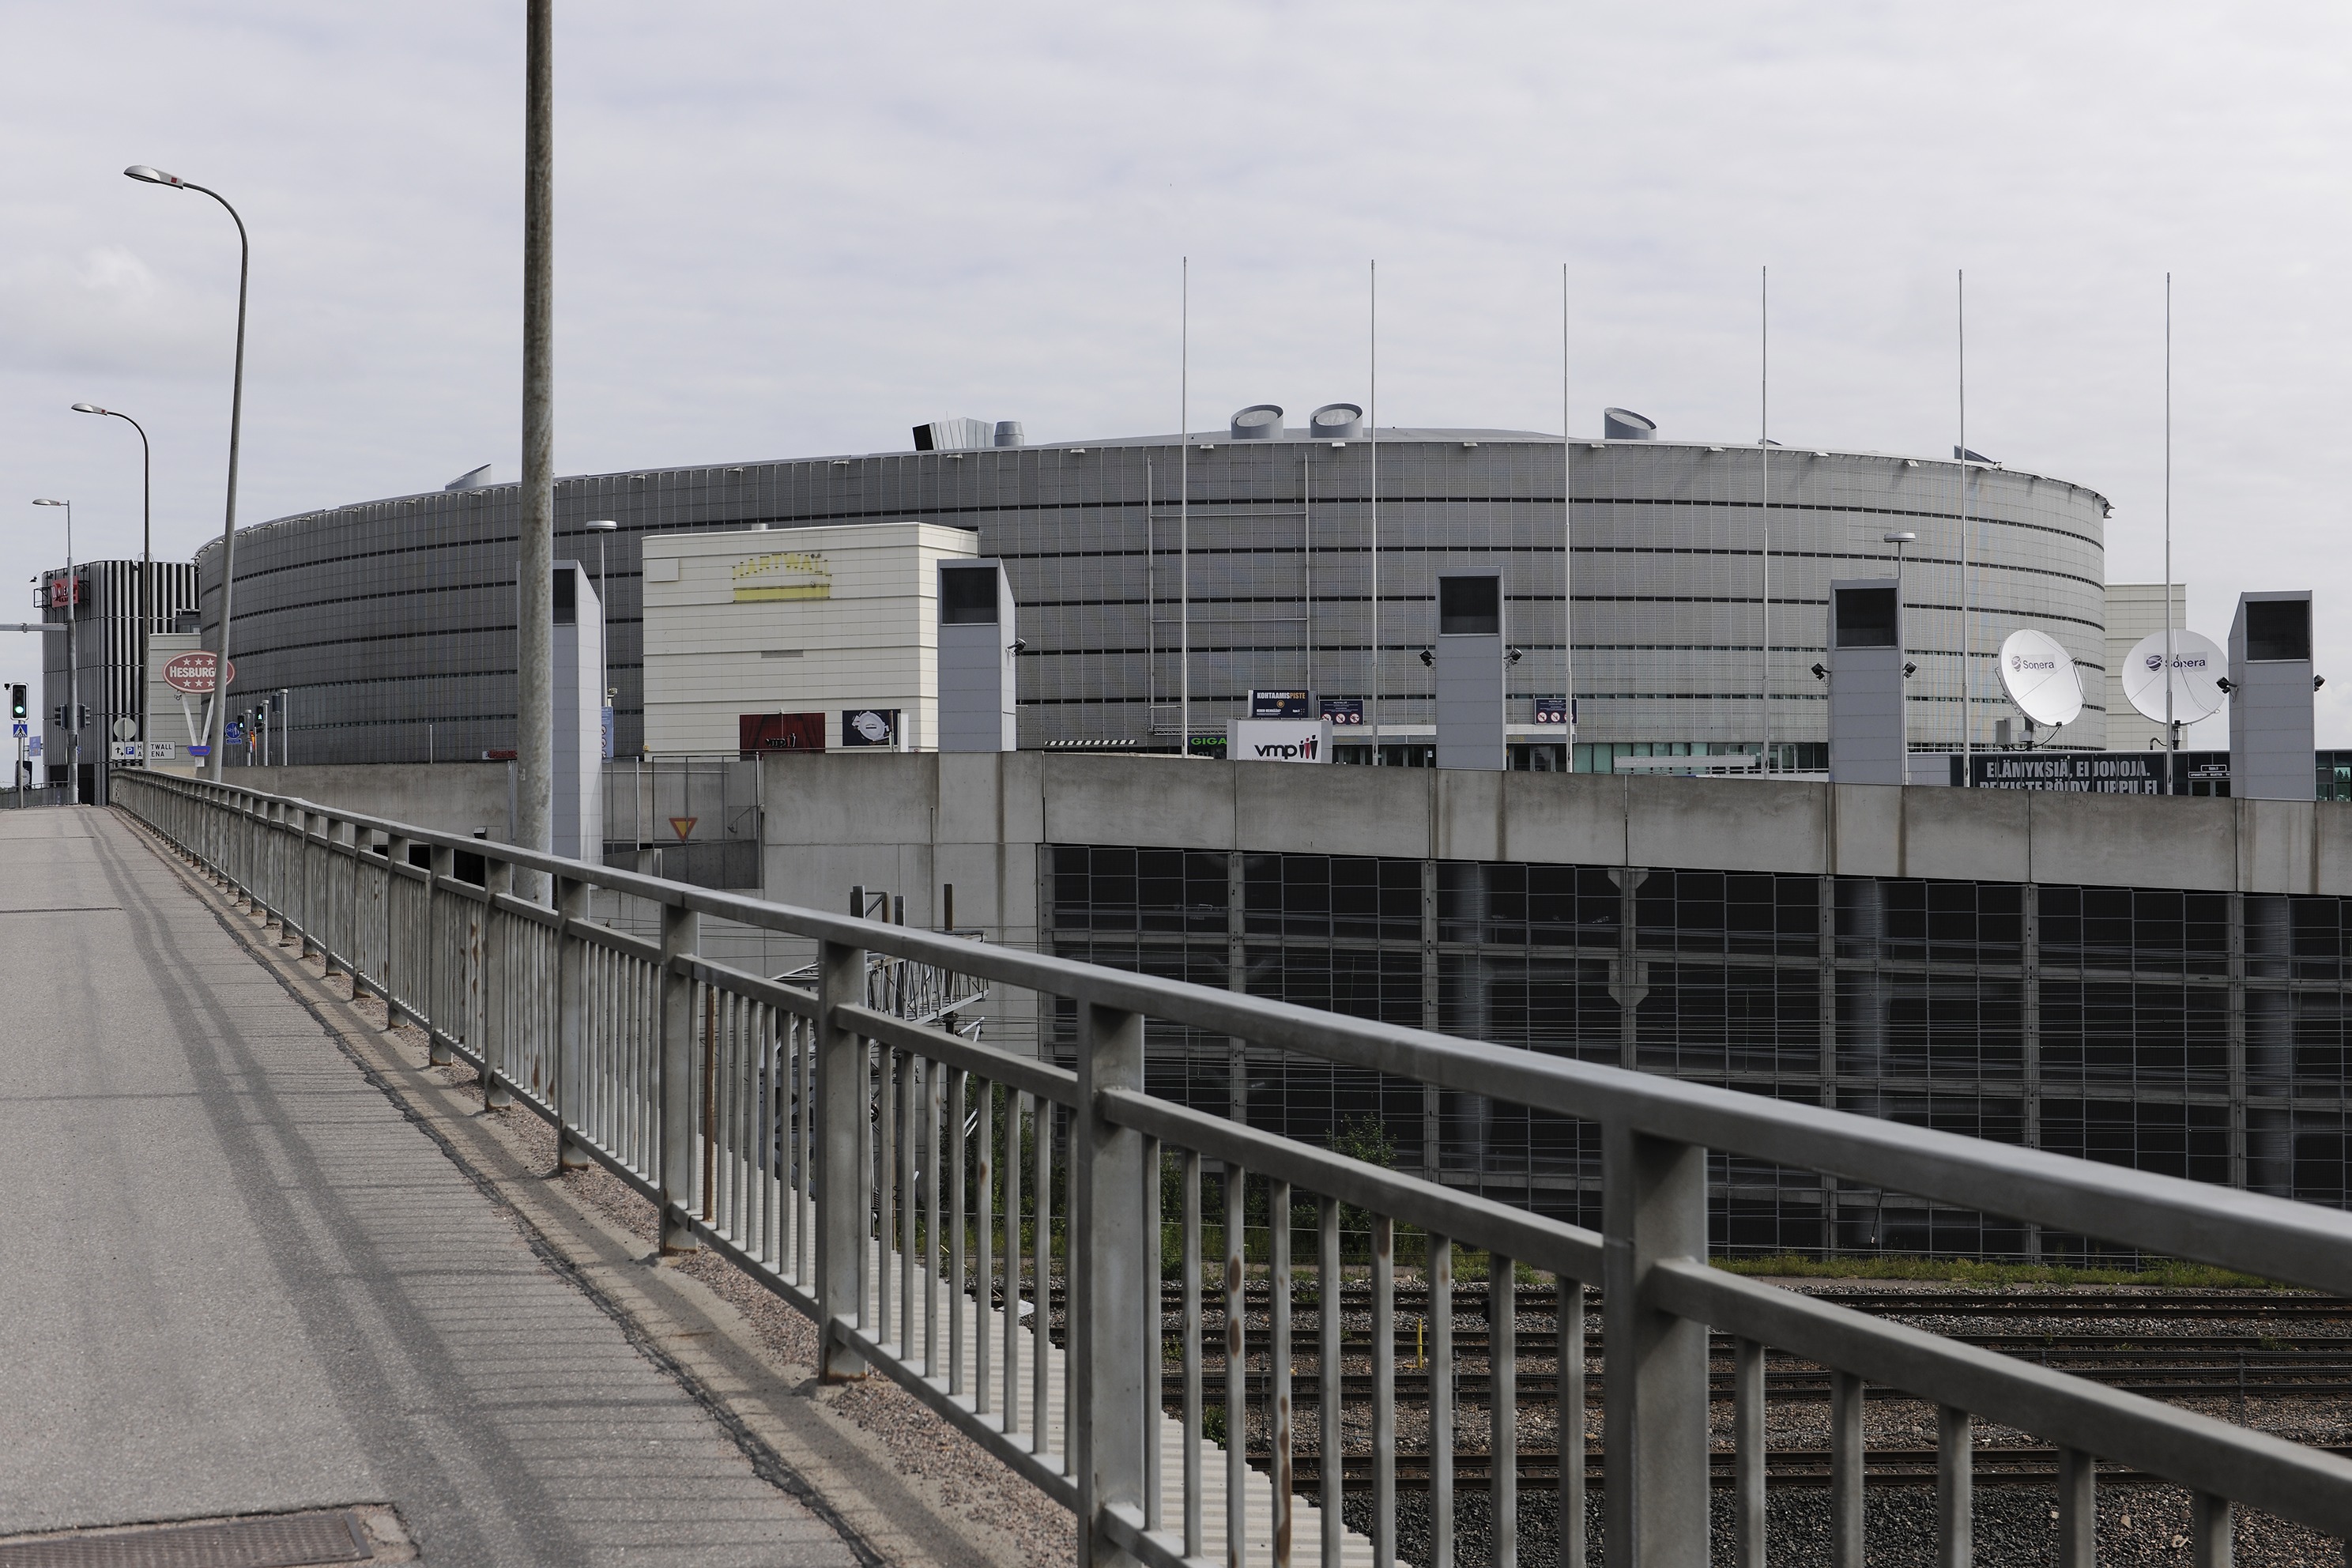 Leijona-aukio, Veturitie 13. Keski-Pasilassa sijaitseva monitoimihalli Hartwall Arena, suunnittelija KVA Arkkitehdit 1995-2004.